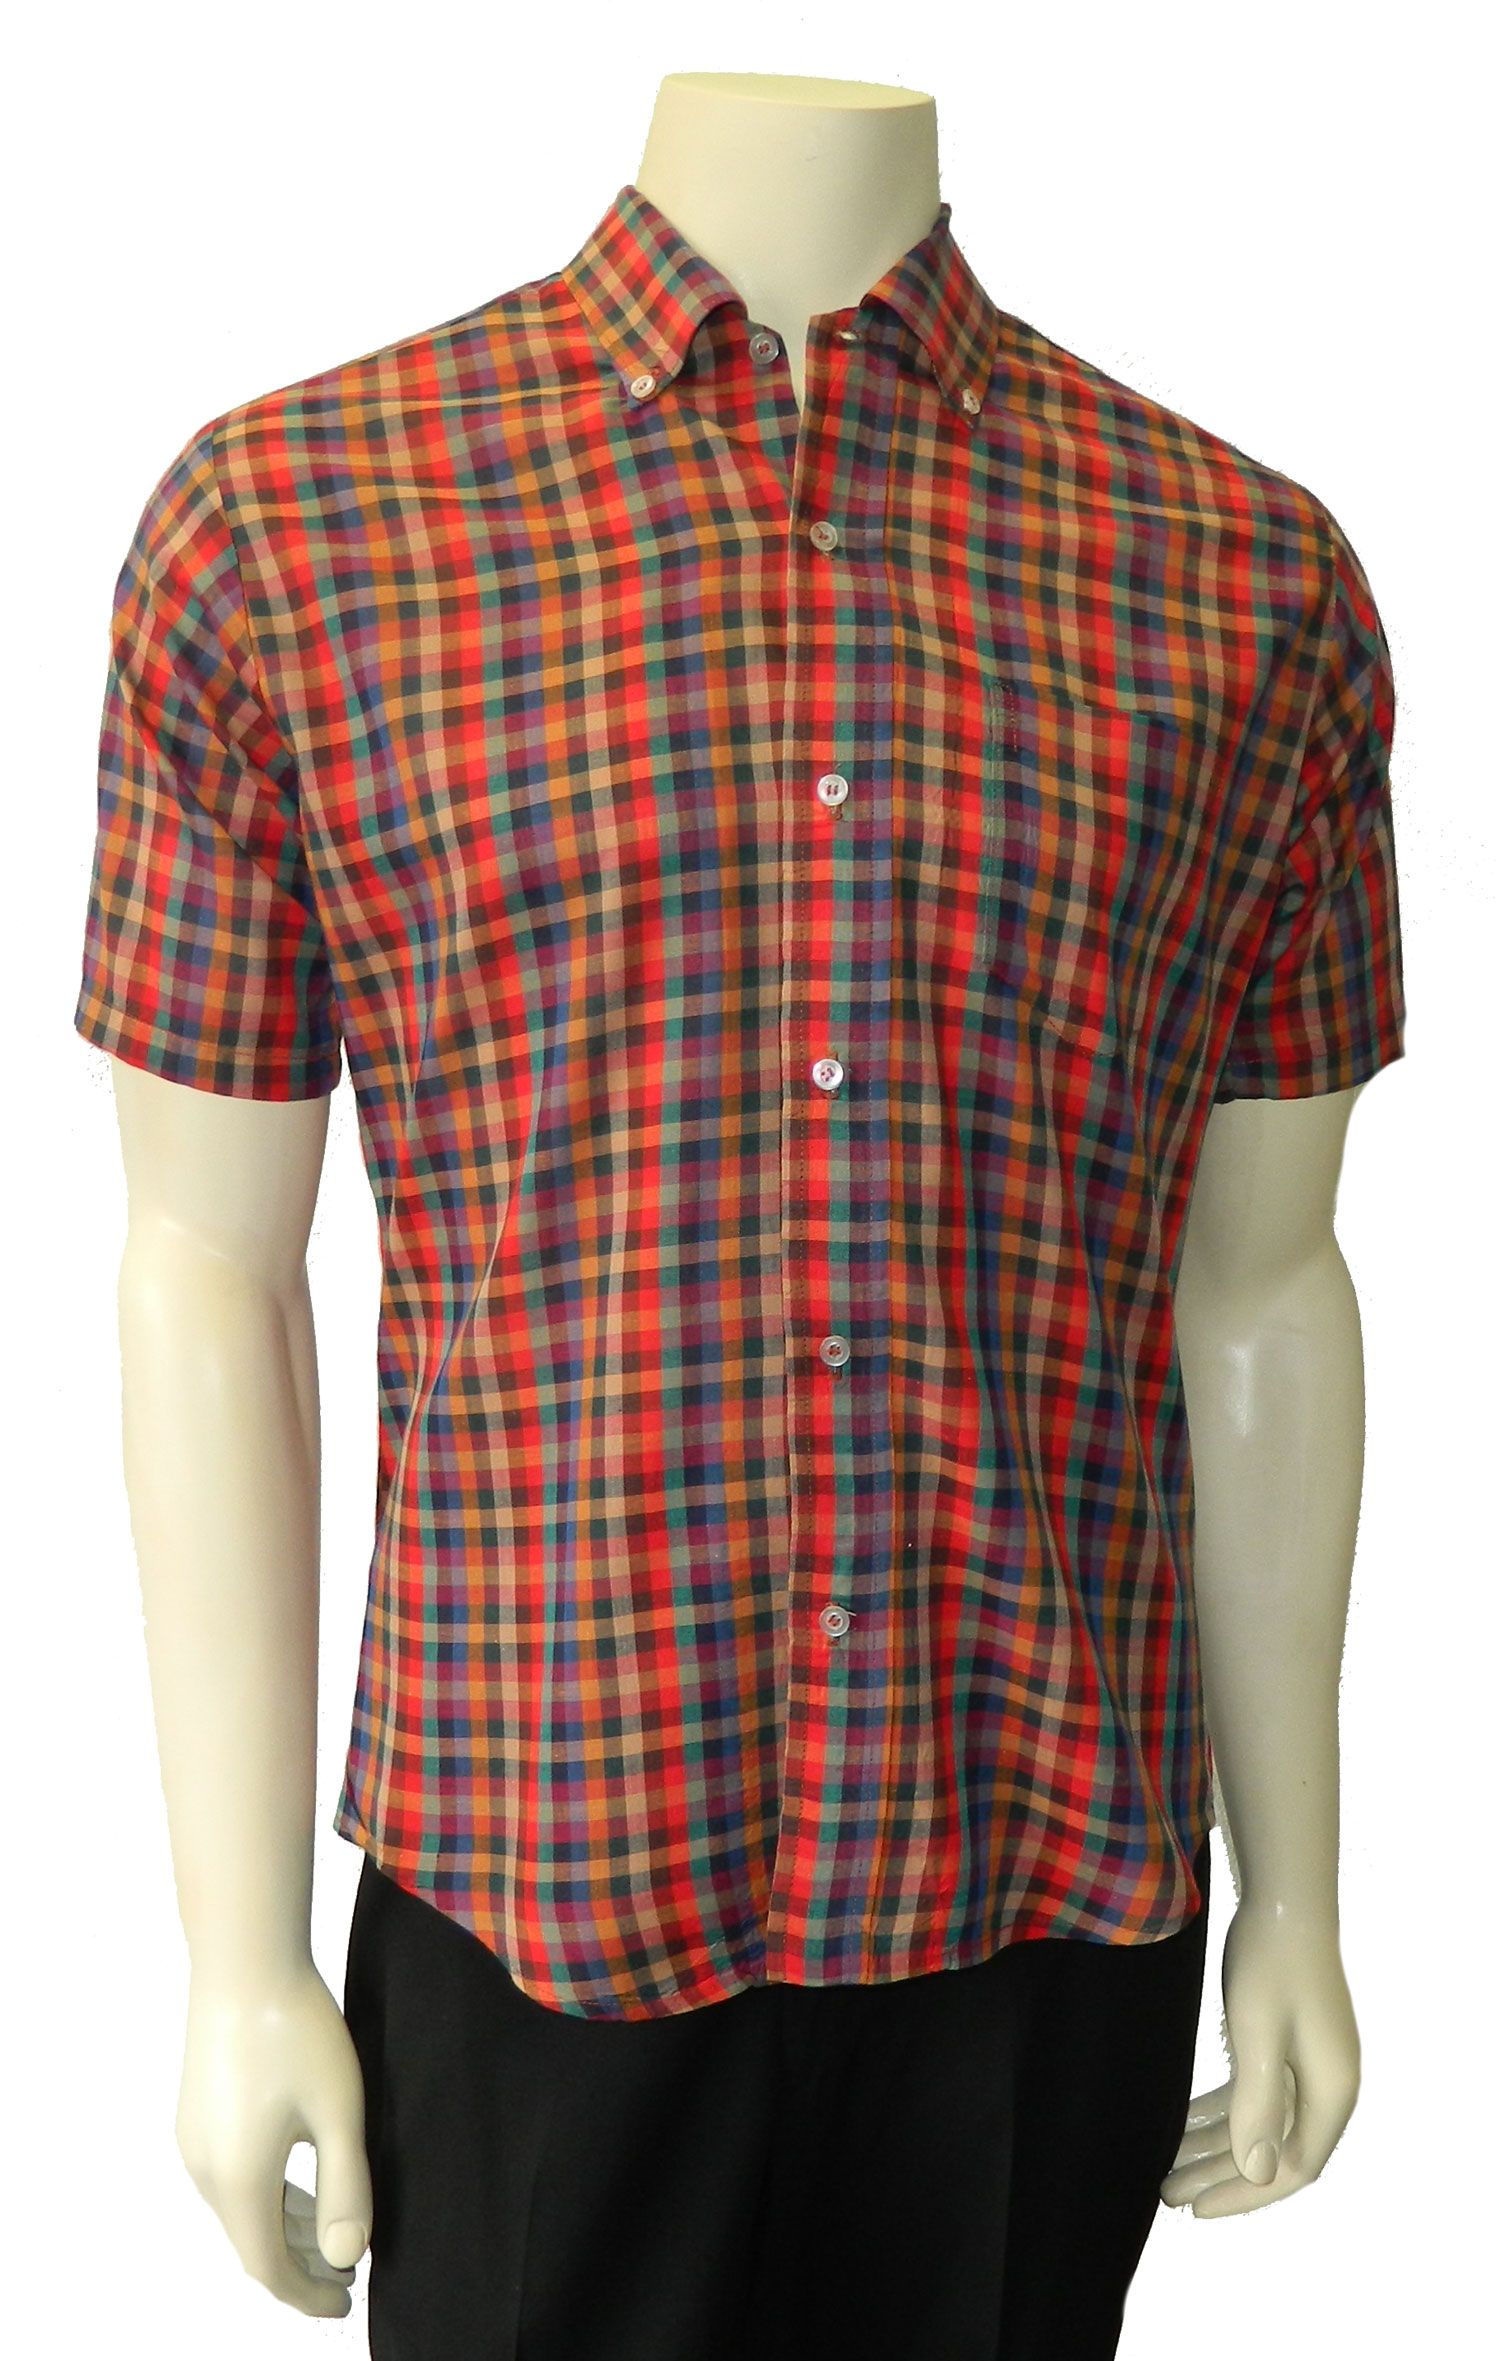 1960's plaid shirt